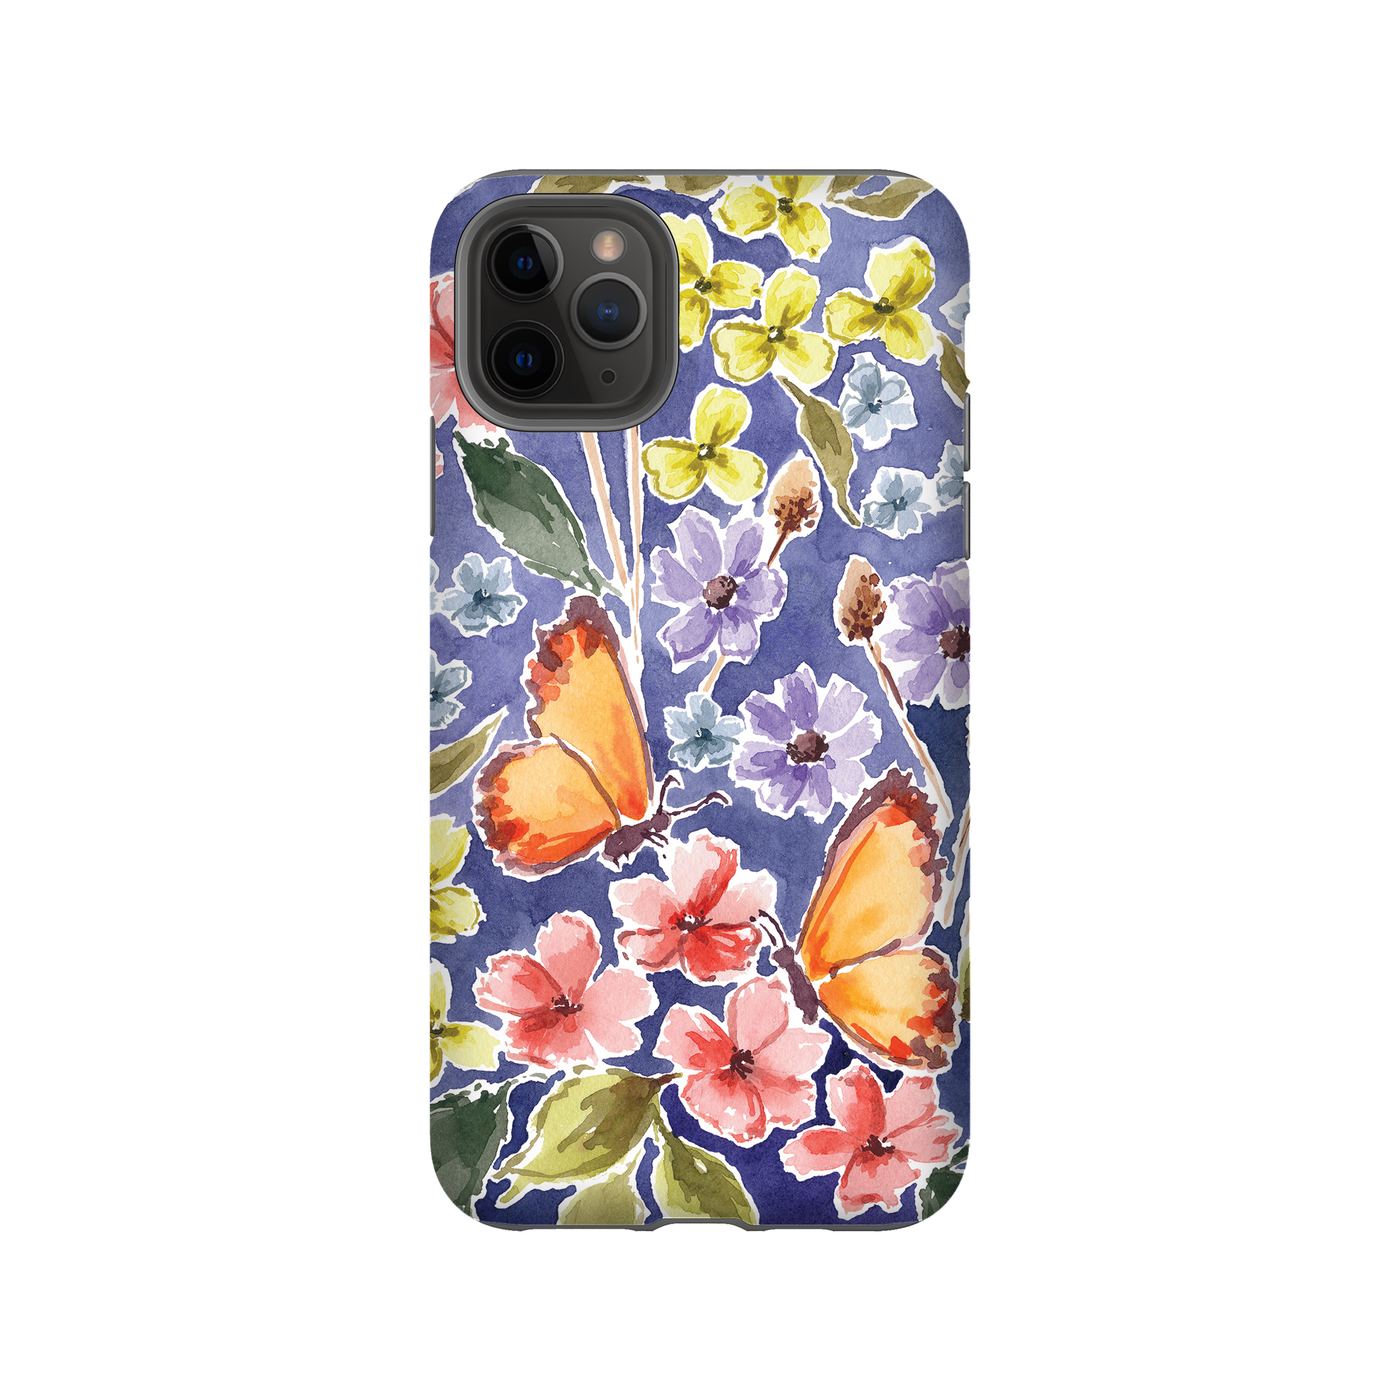 iPhone case in butterflies